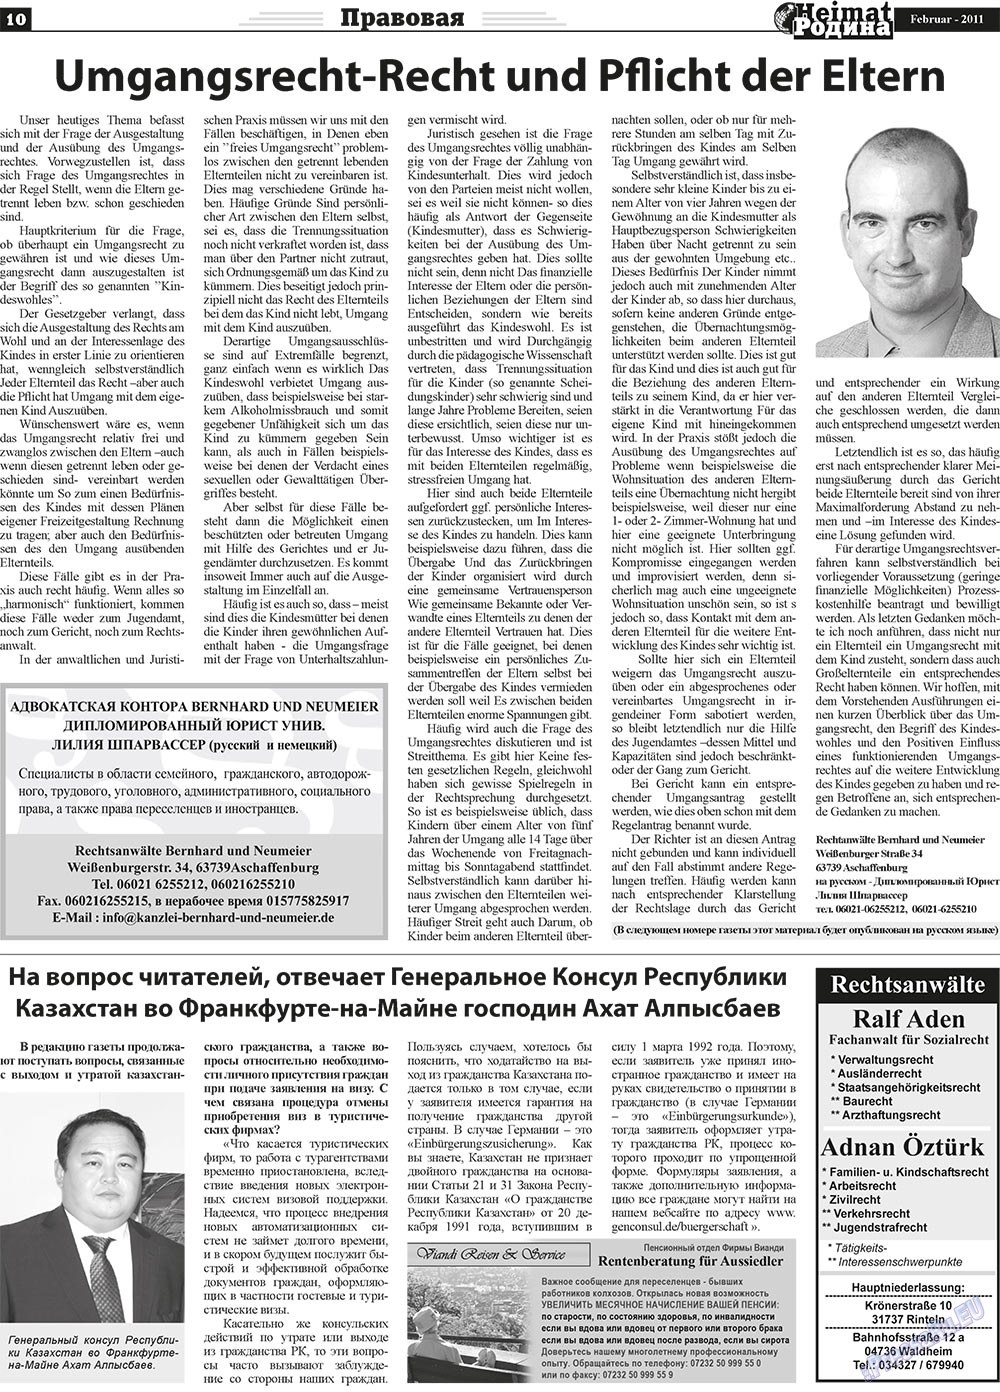 Heimat-Родина (газета). 2011 год, номер 2, стр. 10